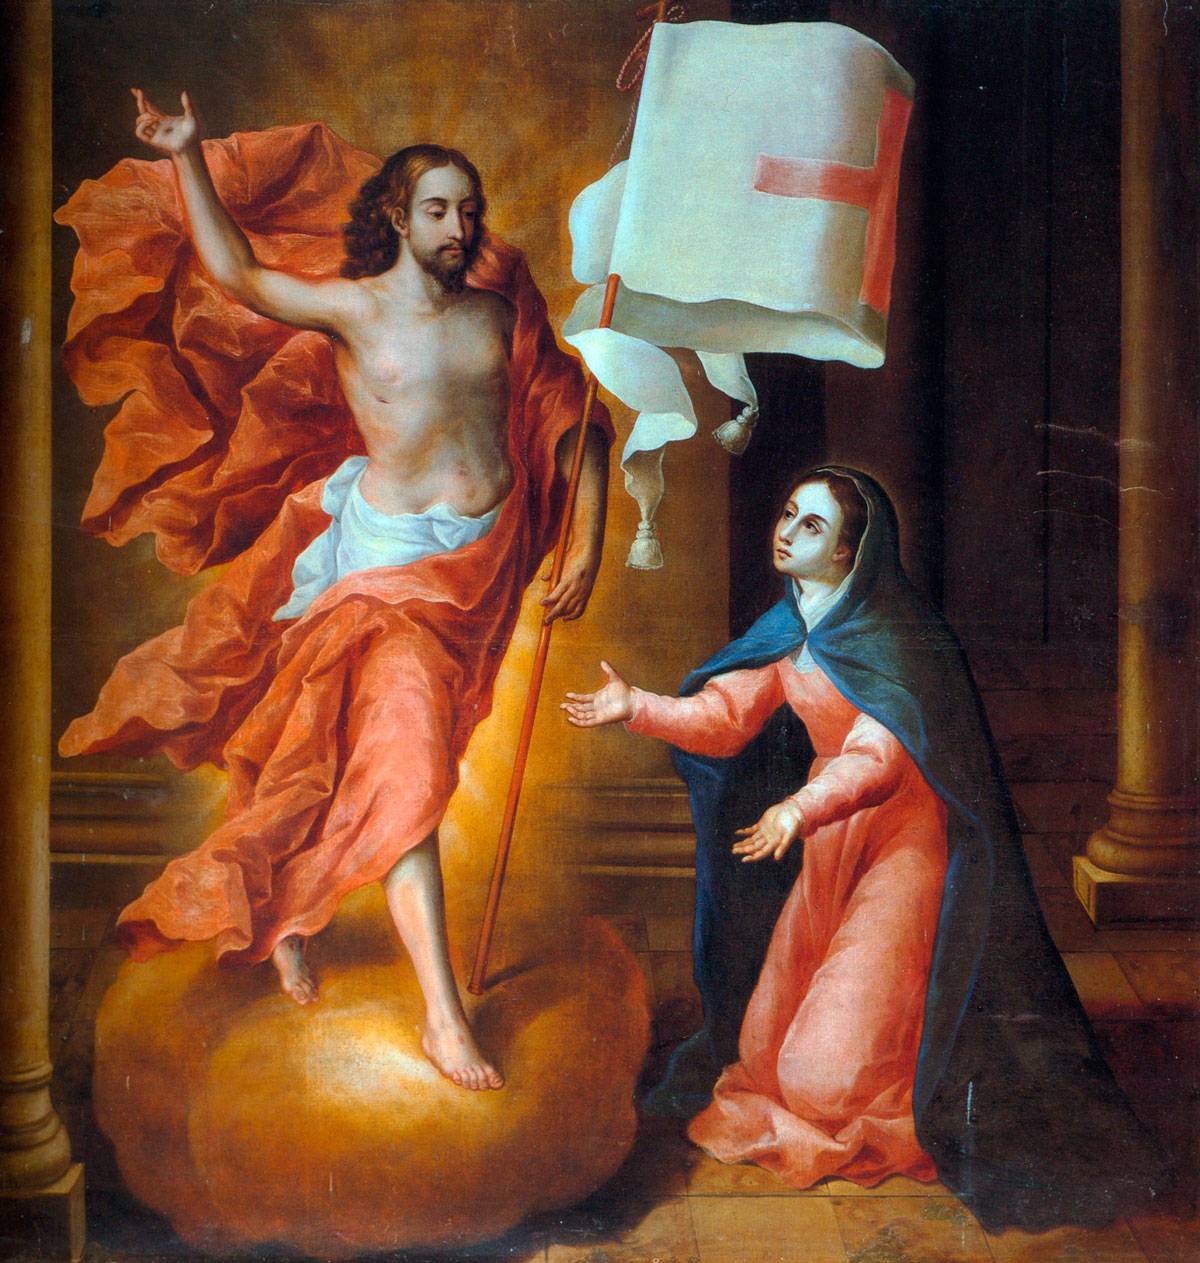 Maria e a ressurreição de Jesus